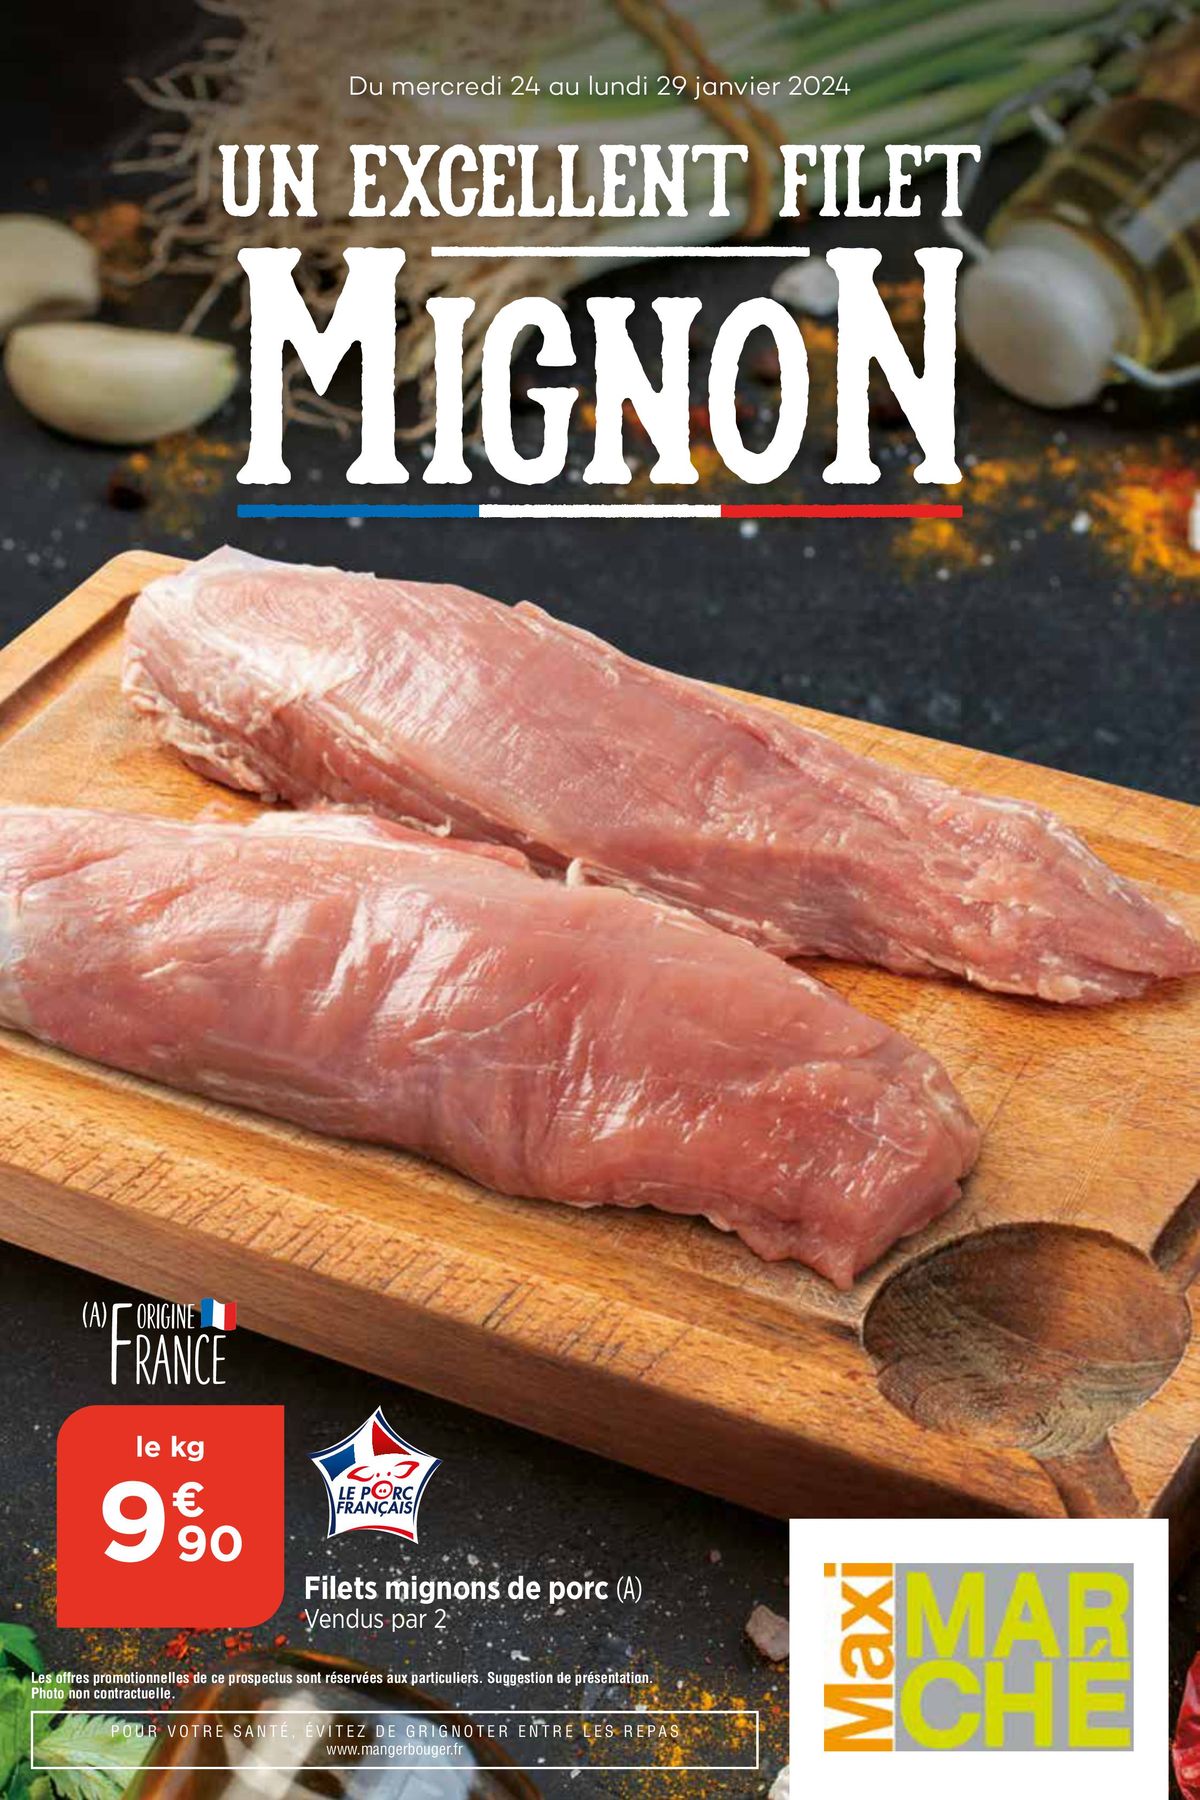 Catalogue Un excellent filet Mignon, page 00001